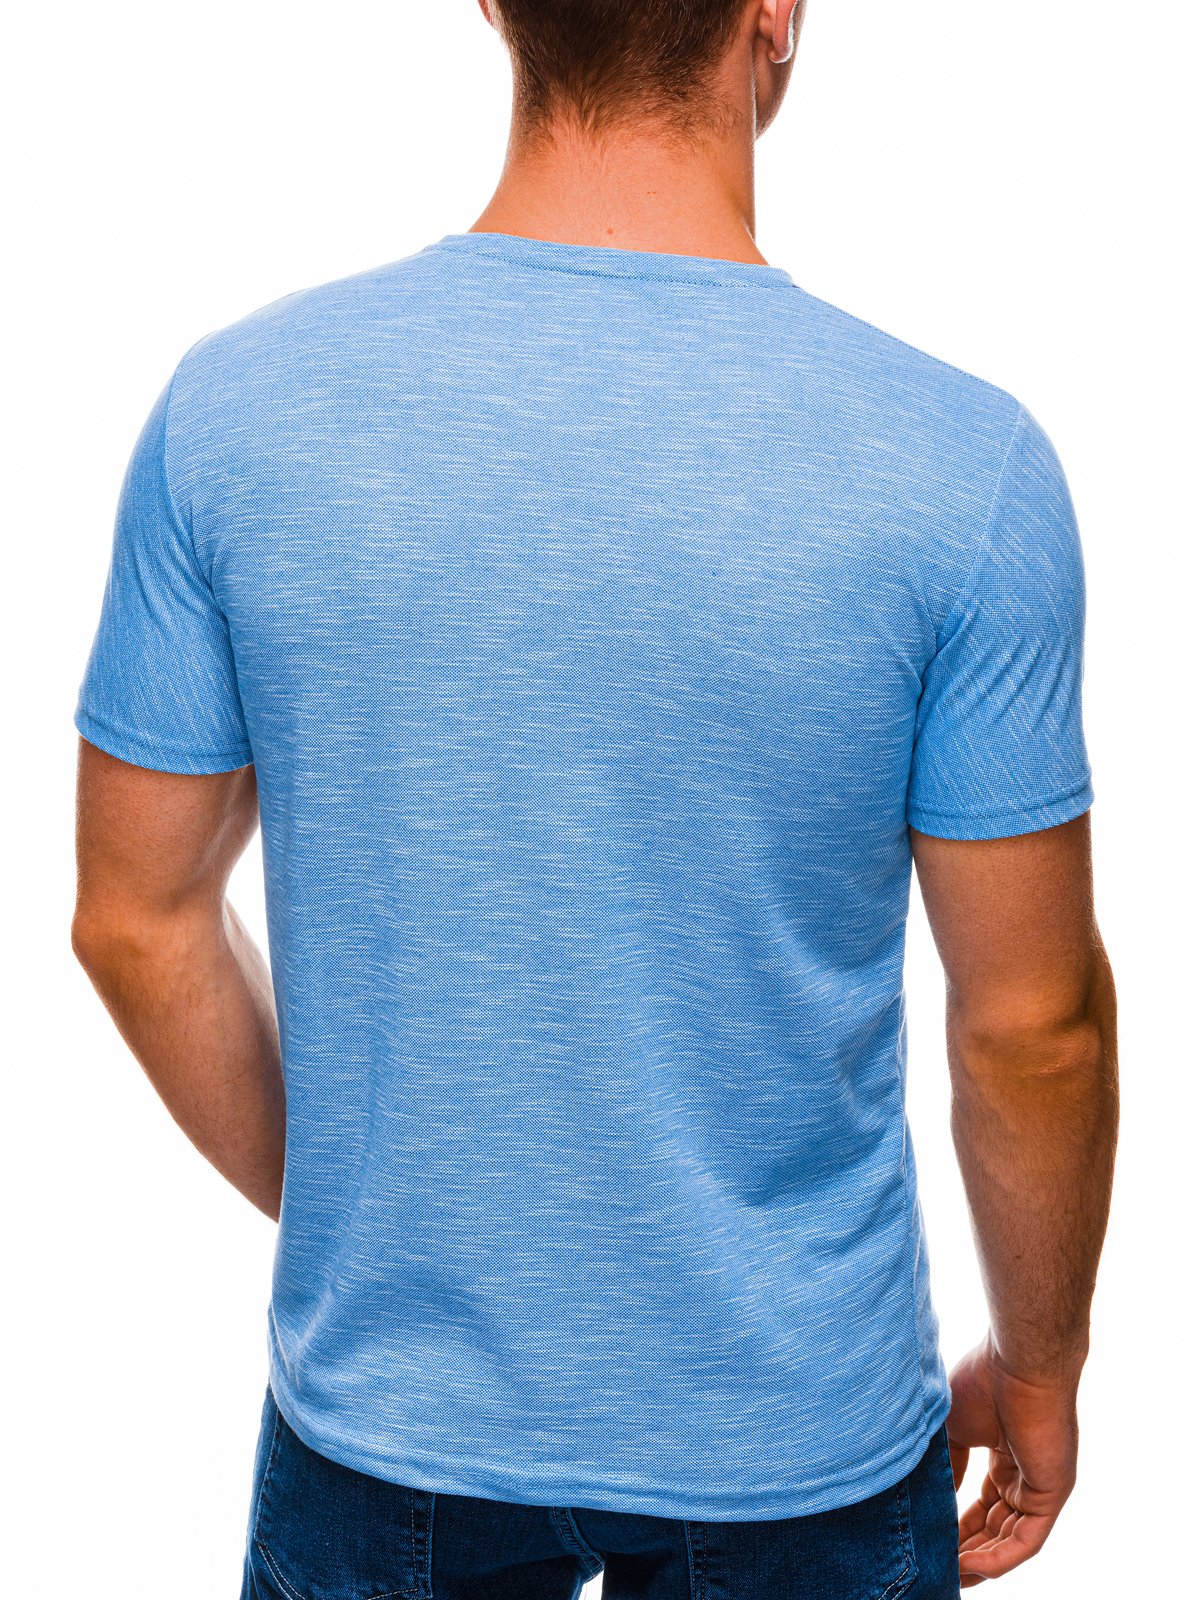 light blue shirt for men